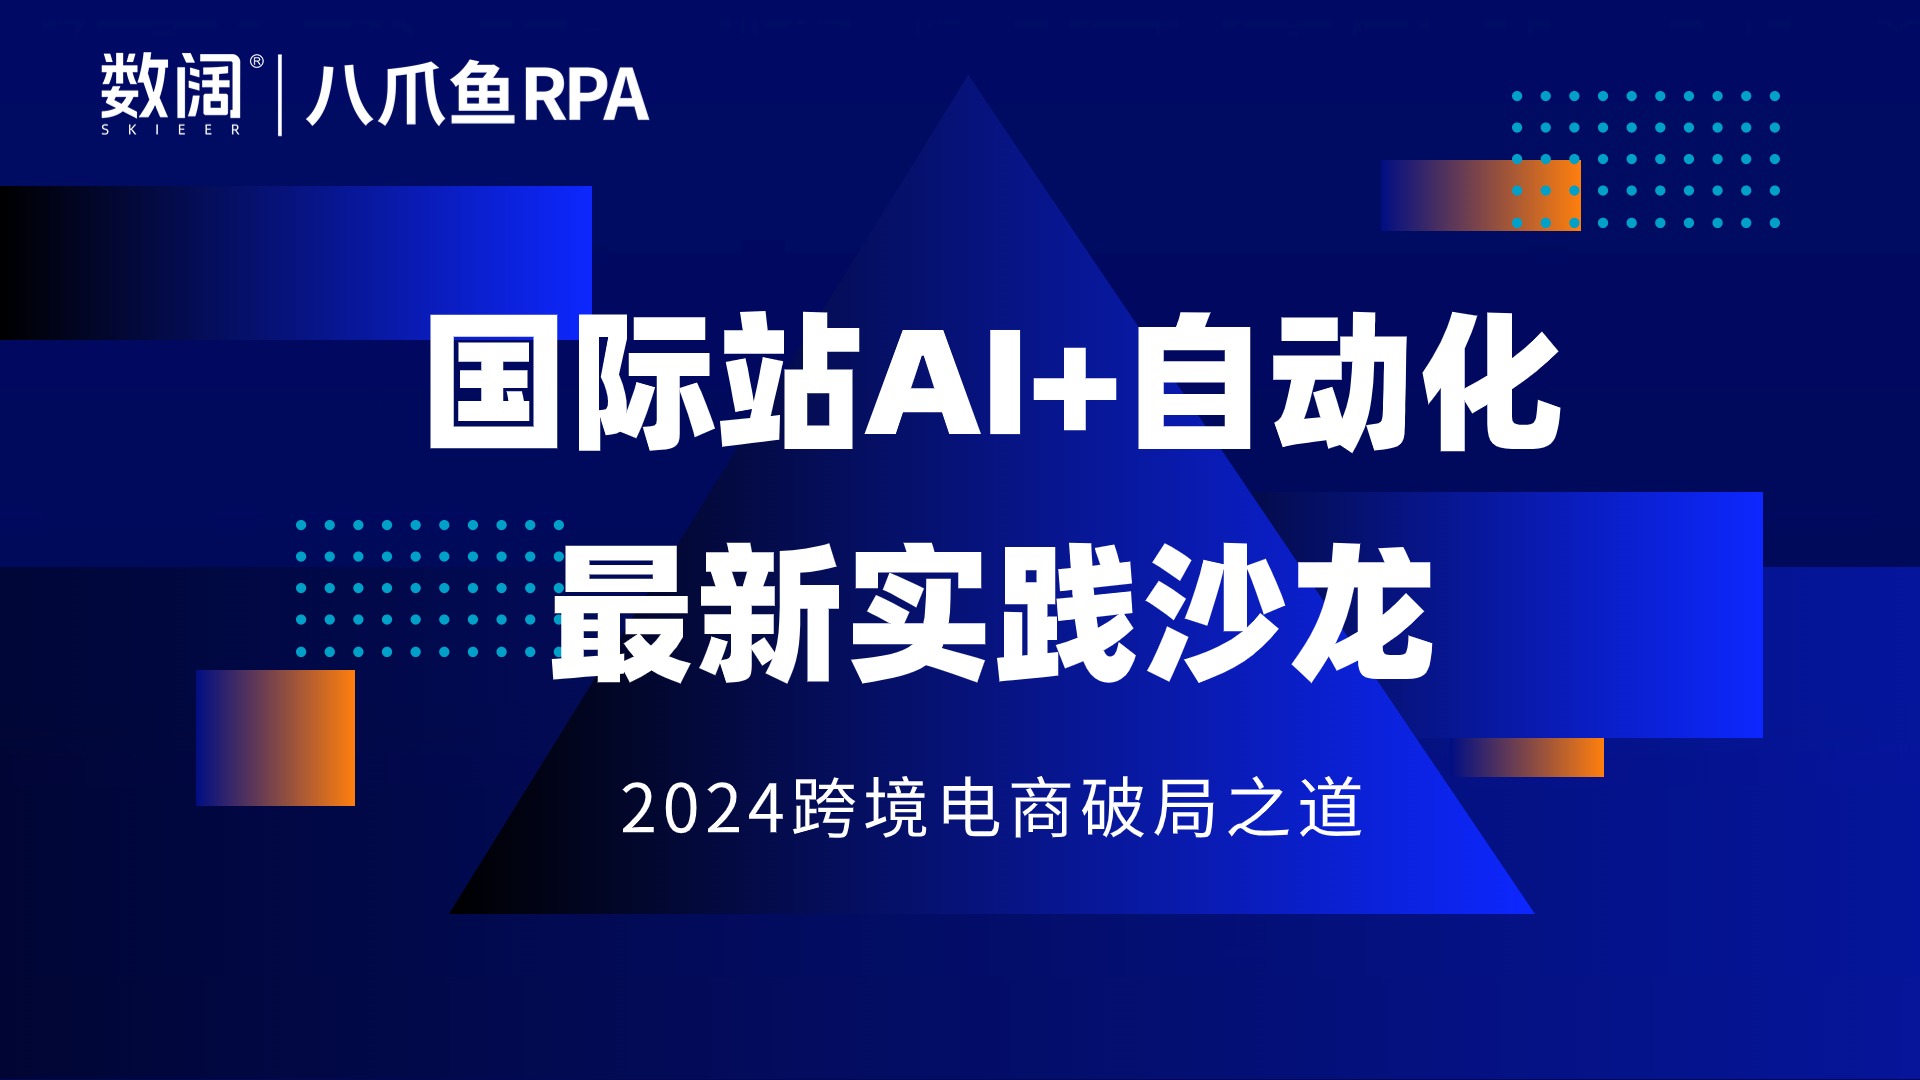 八爪鱼RPA携手行业专家举办“国际站AI+自动化最新实践沙龙”，深入探讨RPA+AI的创新实践